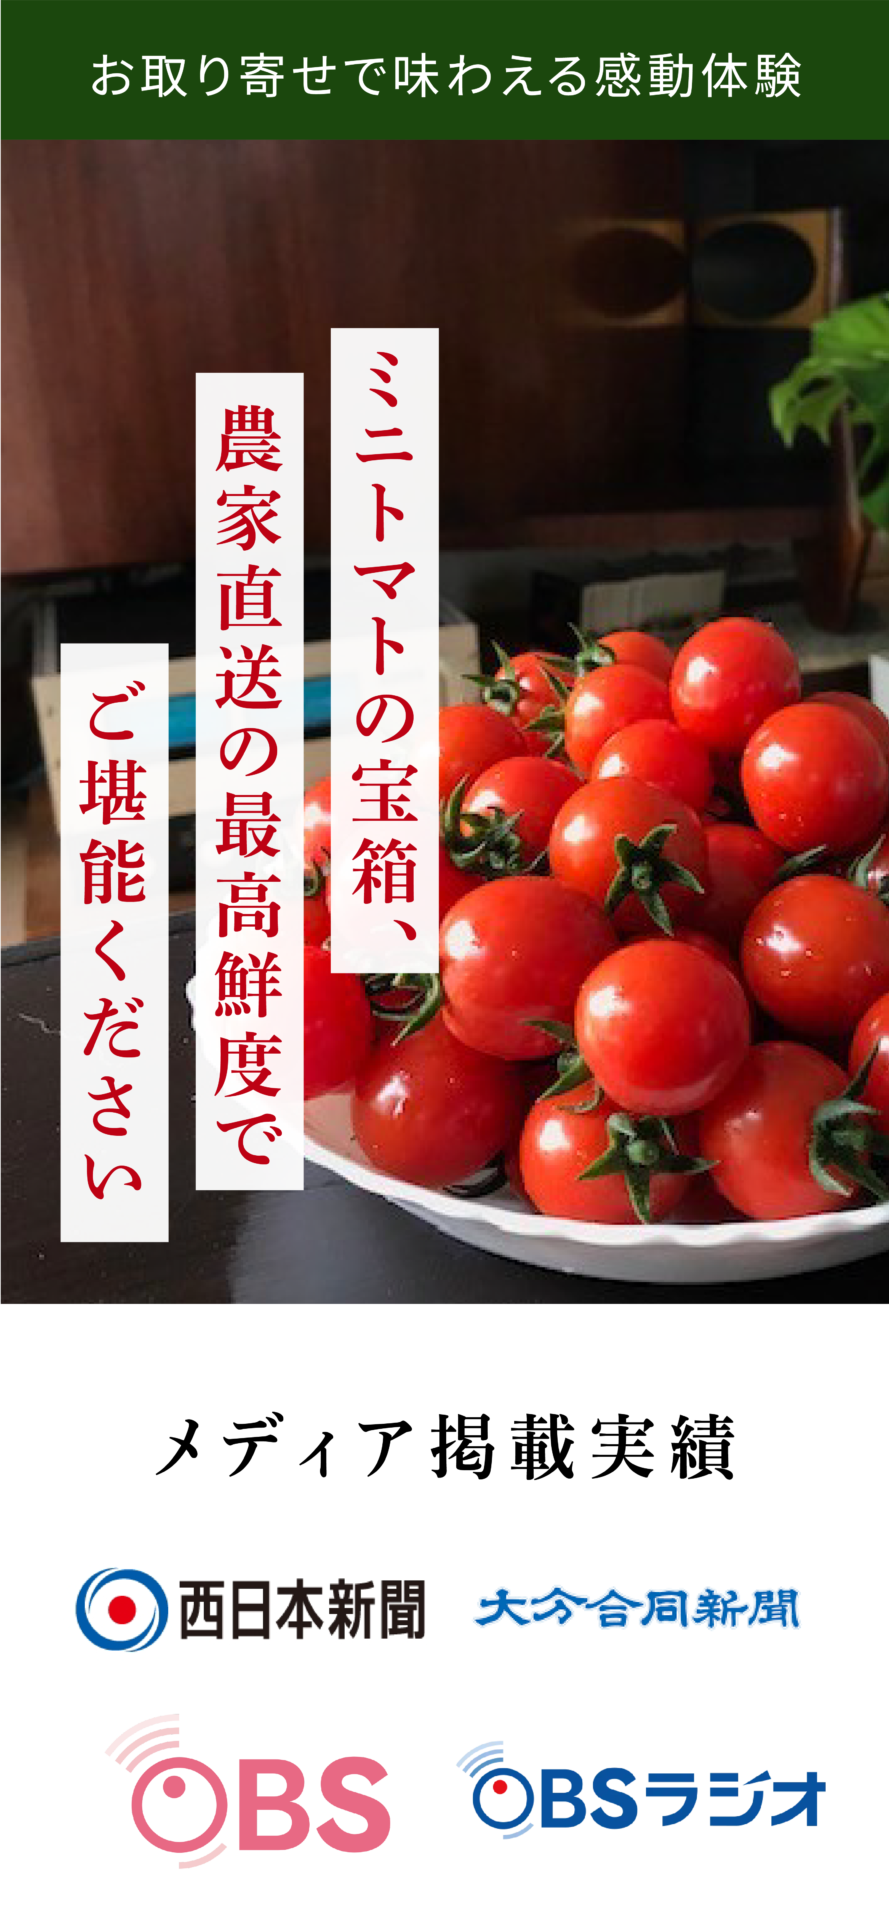 お取り寄せで味わえる感動体験 ミニトマトの宝箱、農家直送の最高鮮度でご堪能ください メディア掲載実績 西日本新聞 大分合同新聞 OBS OBSラジオ